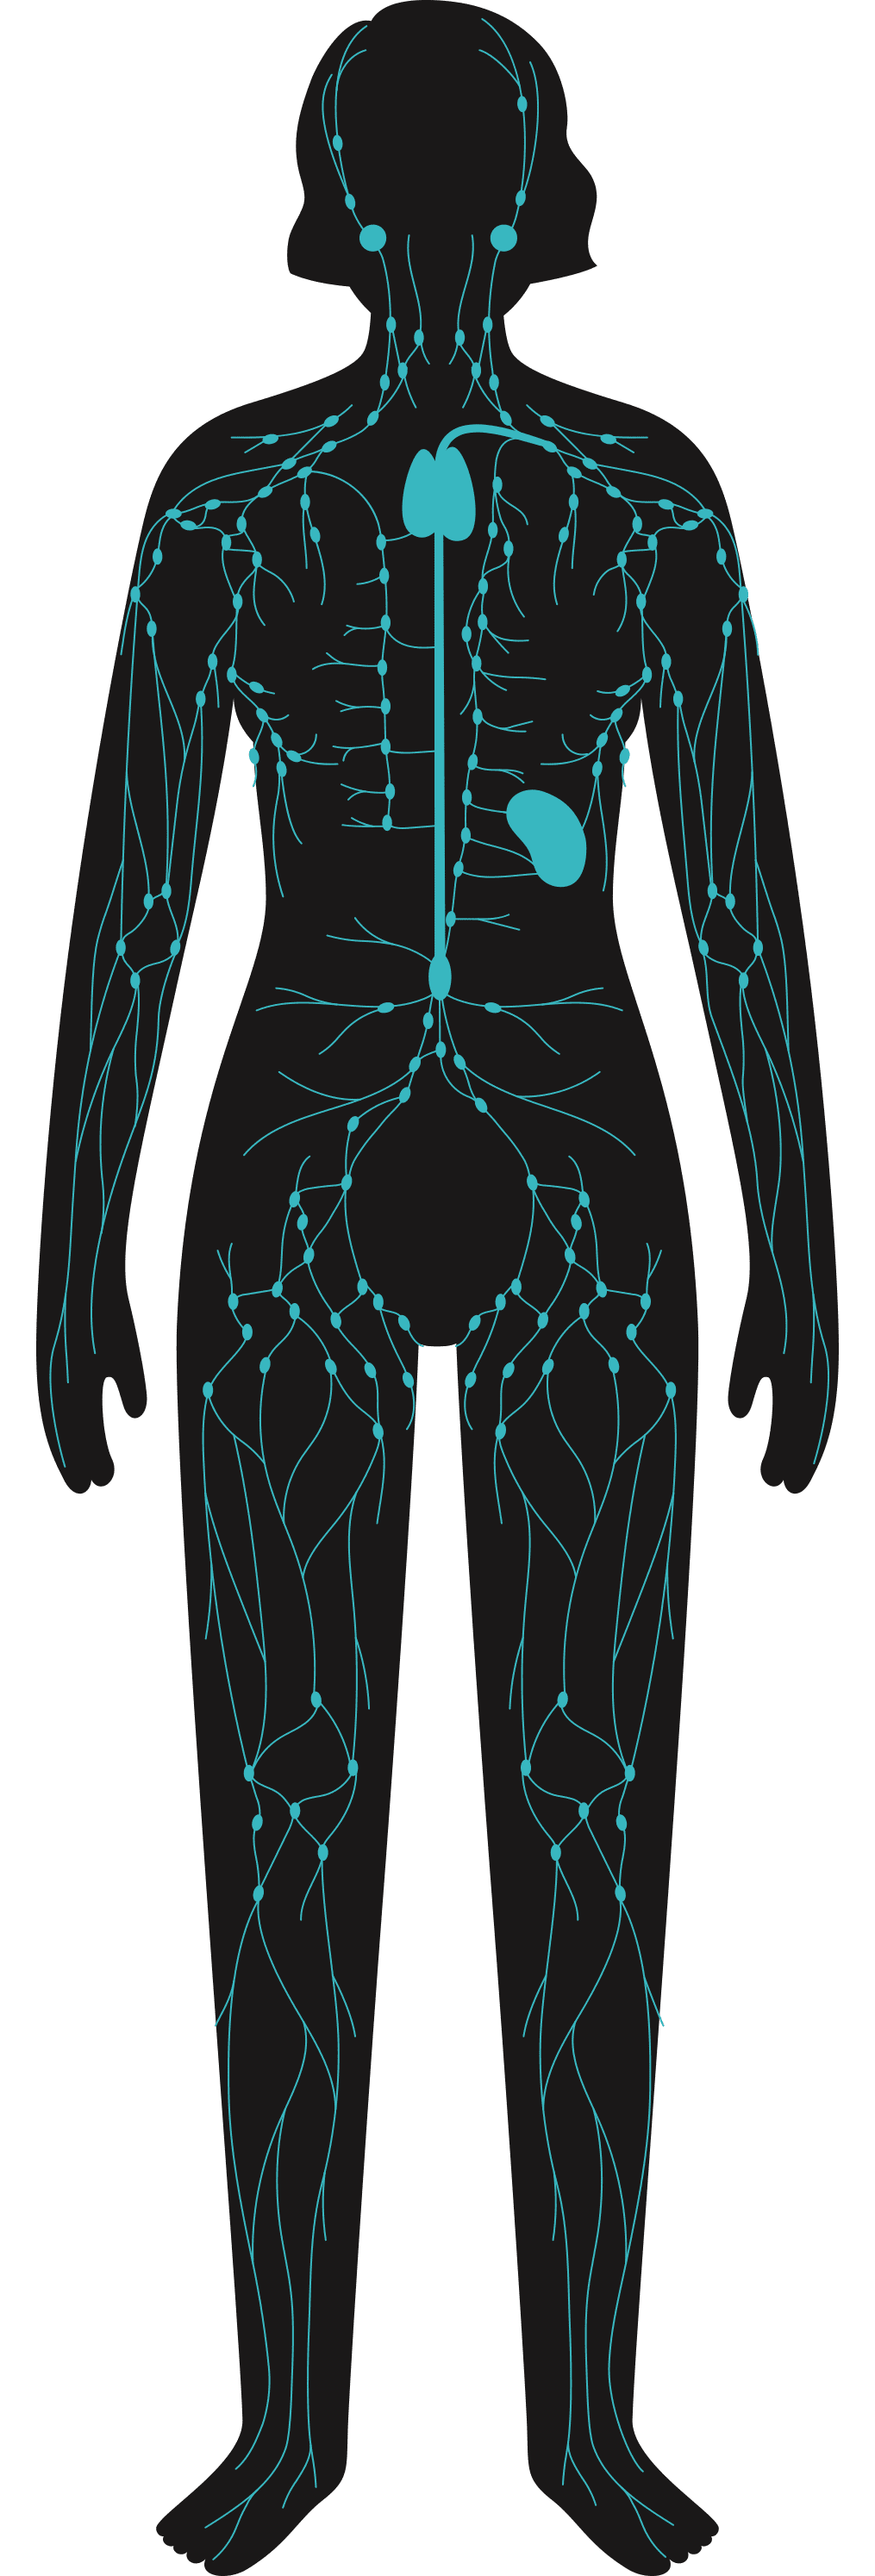 Les soins technologiques - Dessin corps humain - MCT Douleur chronique